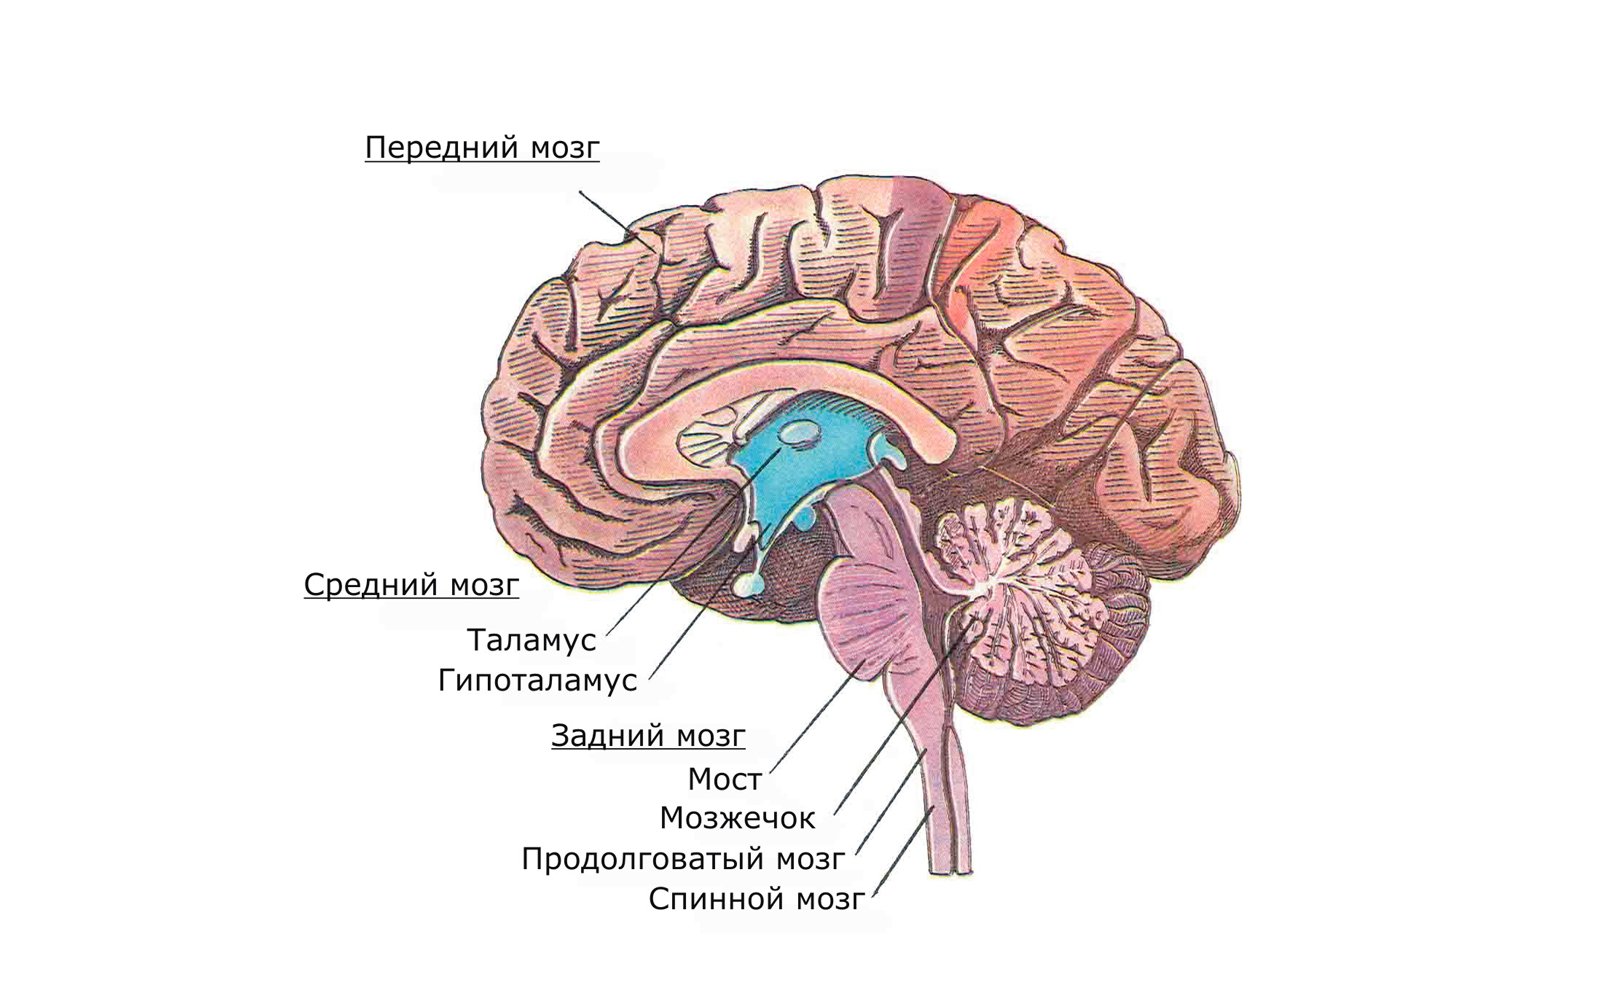 Координирует движения отдел мозга. Головной мозг продолговатый средний задний промежуточный. Головной мозг варолиев мост. Передний мозг мозжечок и ствол мозга. Задний мозг мост и мозжечок.